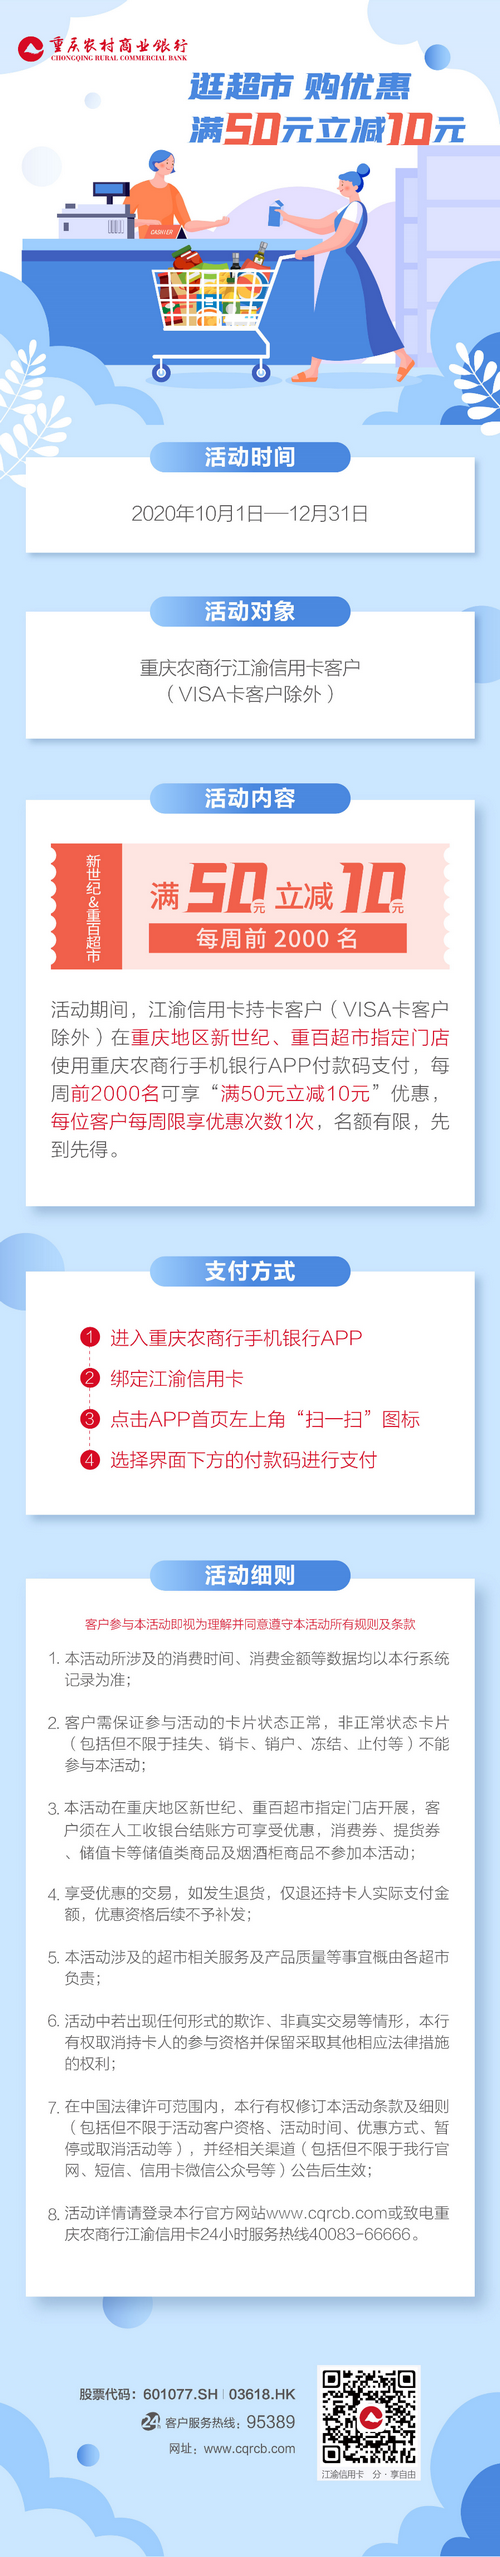 重庆农商银行江渝信用卡超市满减优惠活动